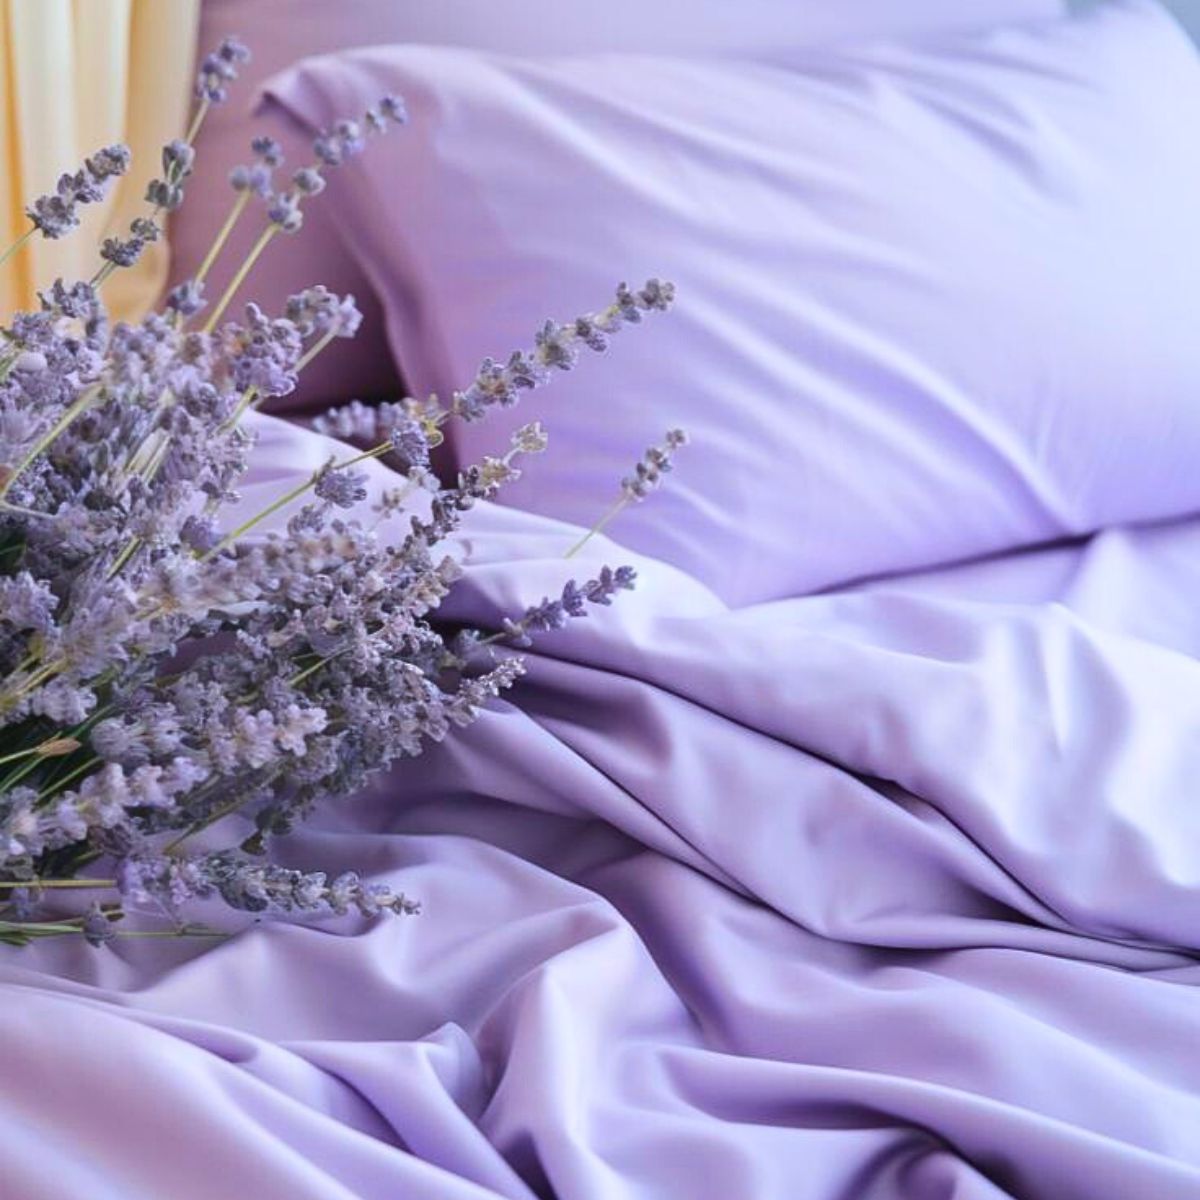 ​Adding Plants to Your Bedroom Benefits Sleep